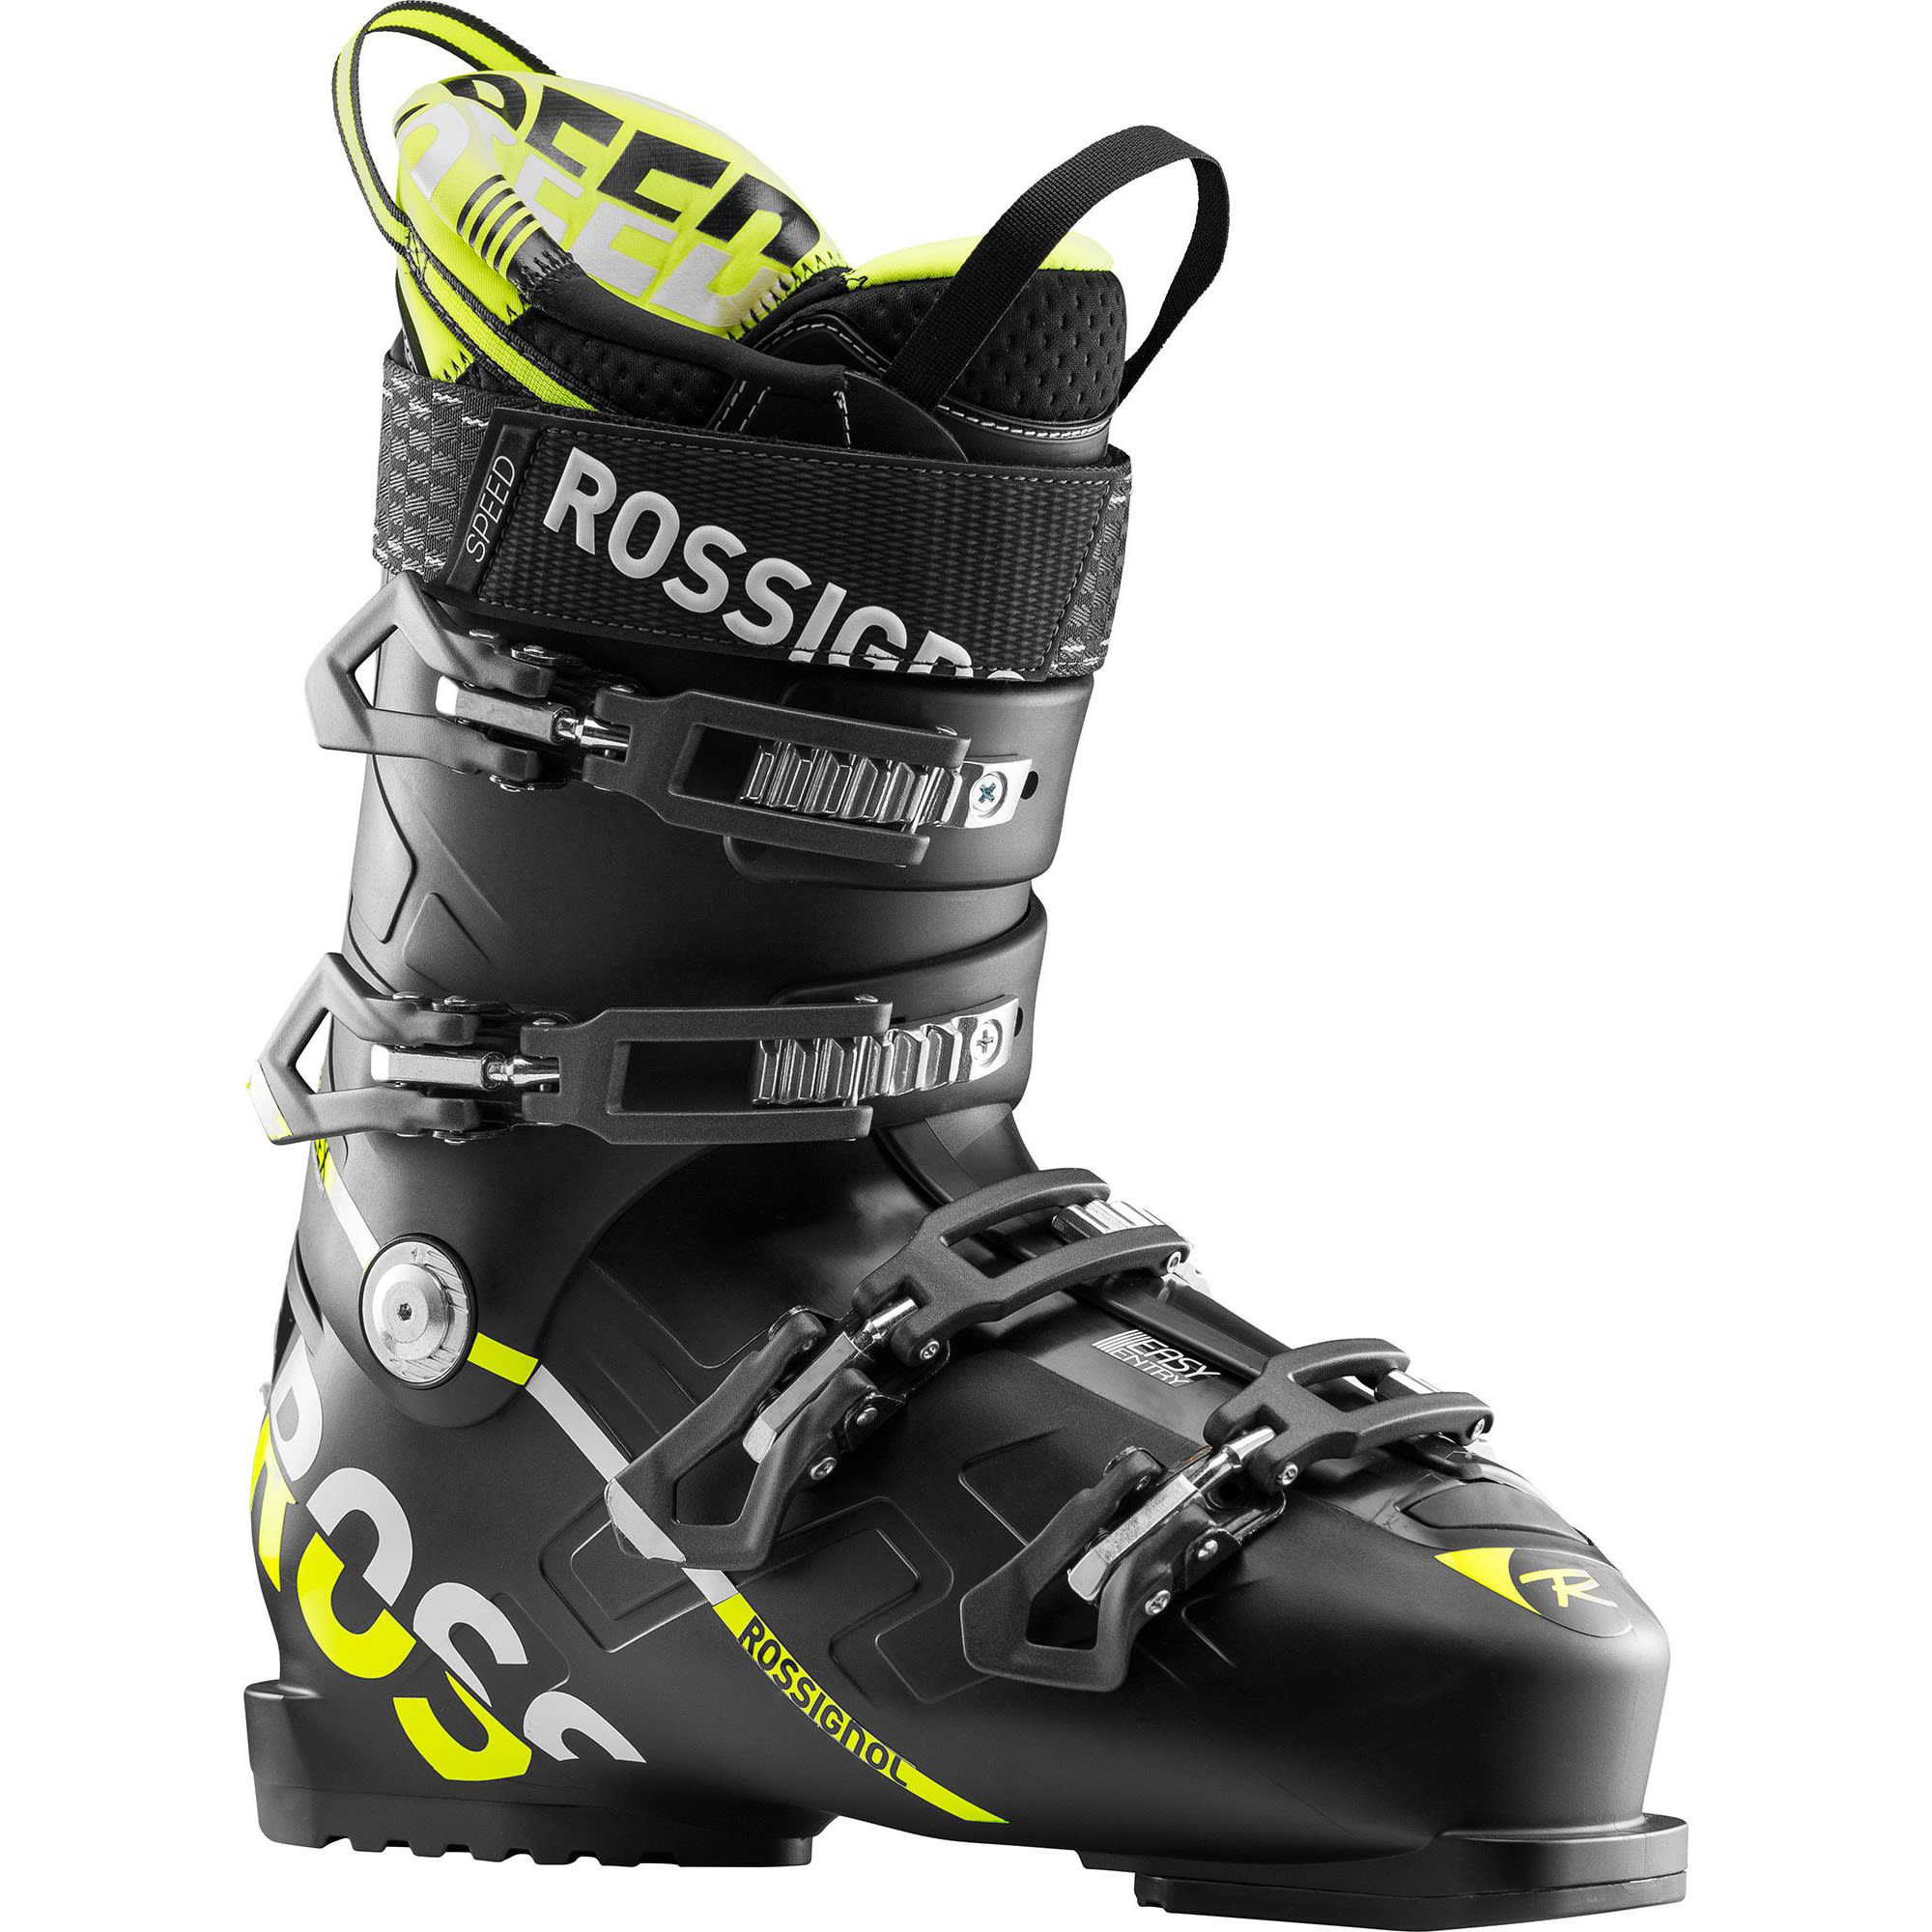 Rossignol Track 110 Ski Shoe Men's Khaki Allmountain New Skiboot Ski Boots J19 